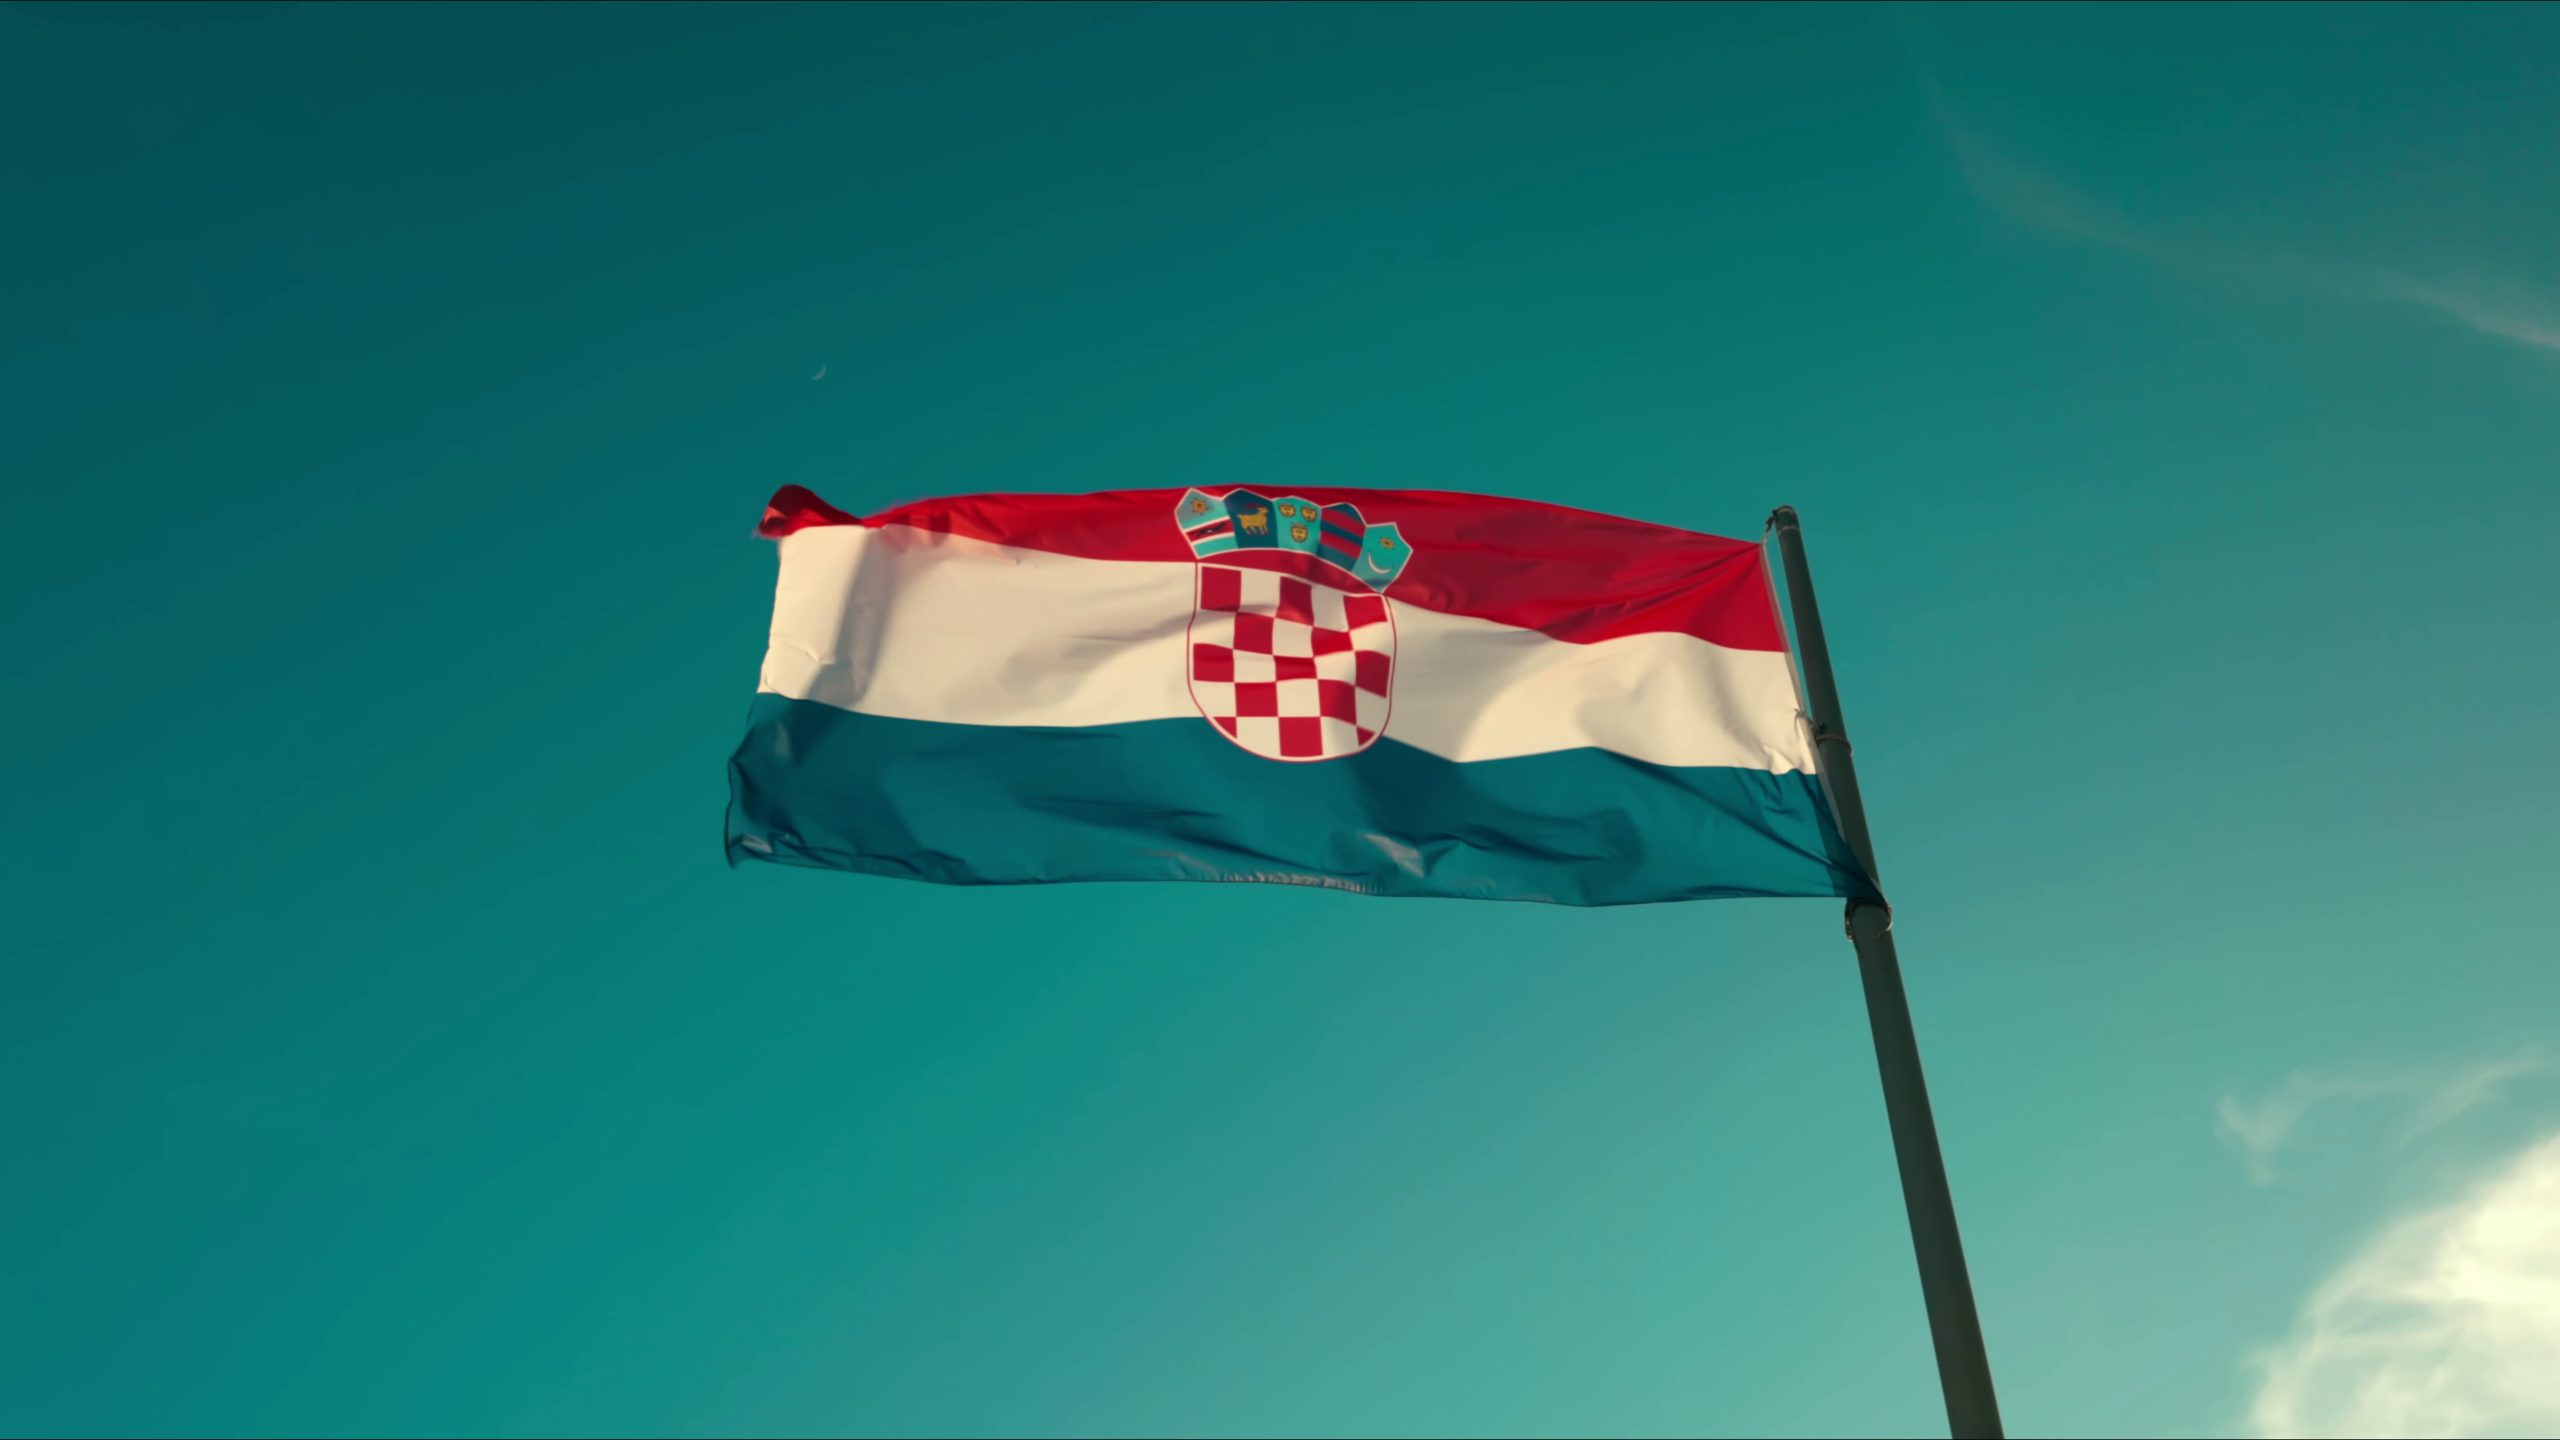 croatian skill box platform